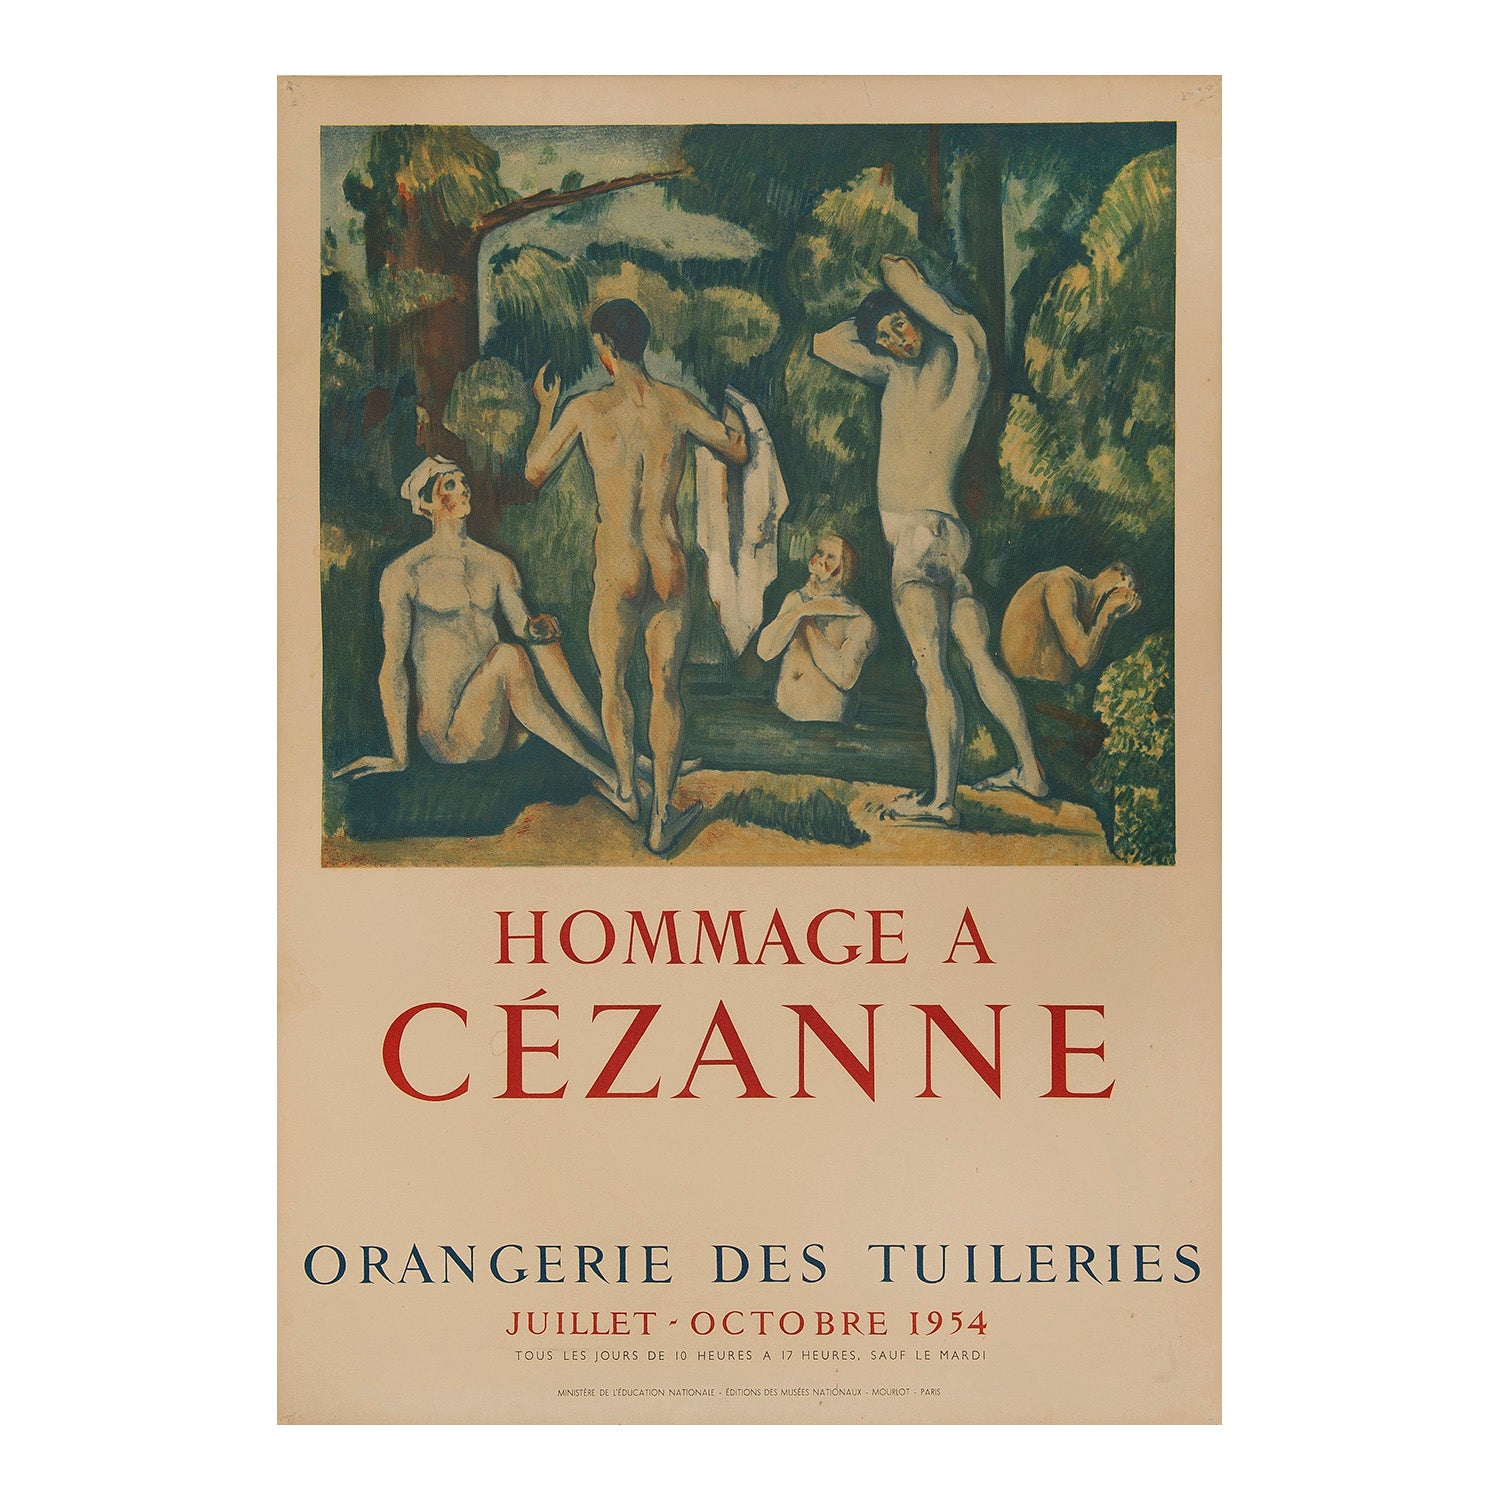 Original exhibition poster, Hommage A Cézanne, Orangerie Des Tuileries, Paris, 1954.  Artwork shows 5 men bathing in a river beneath trees.